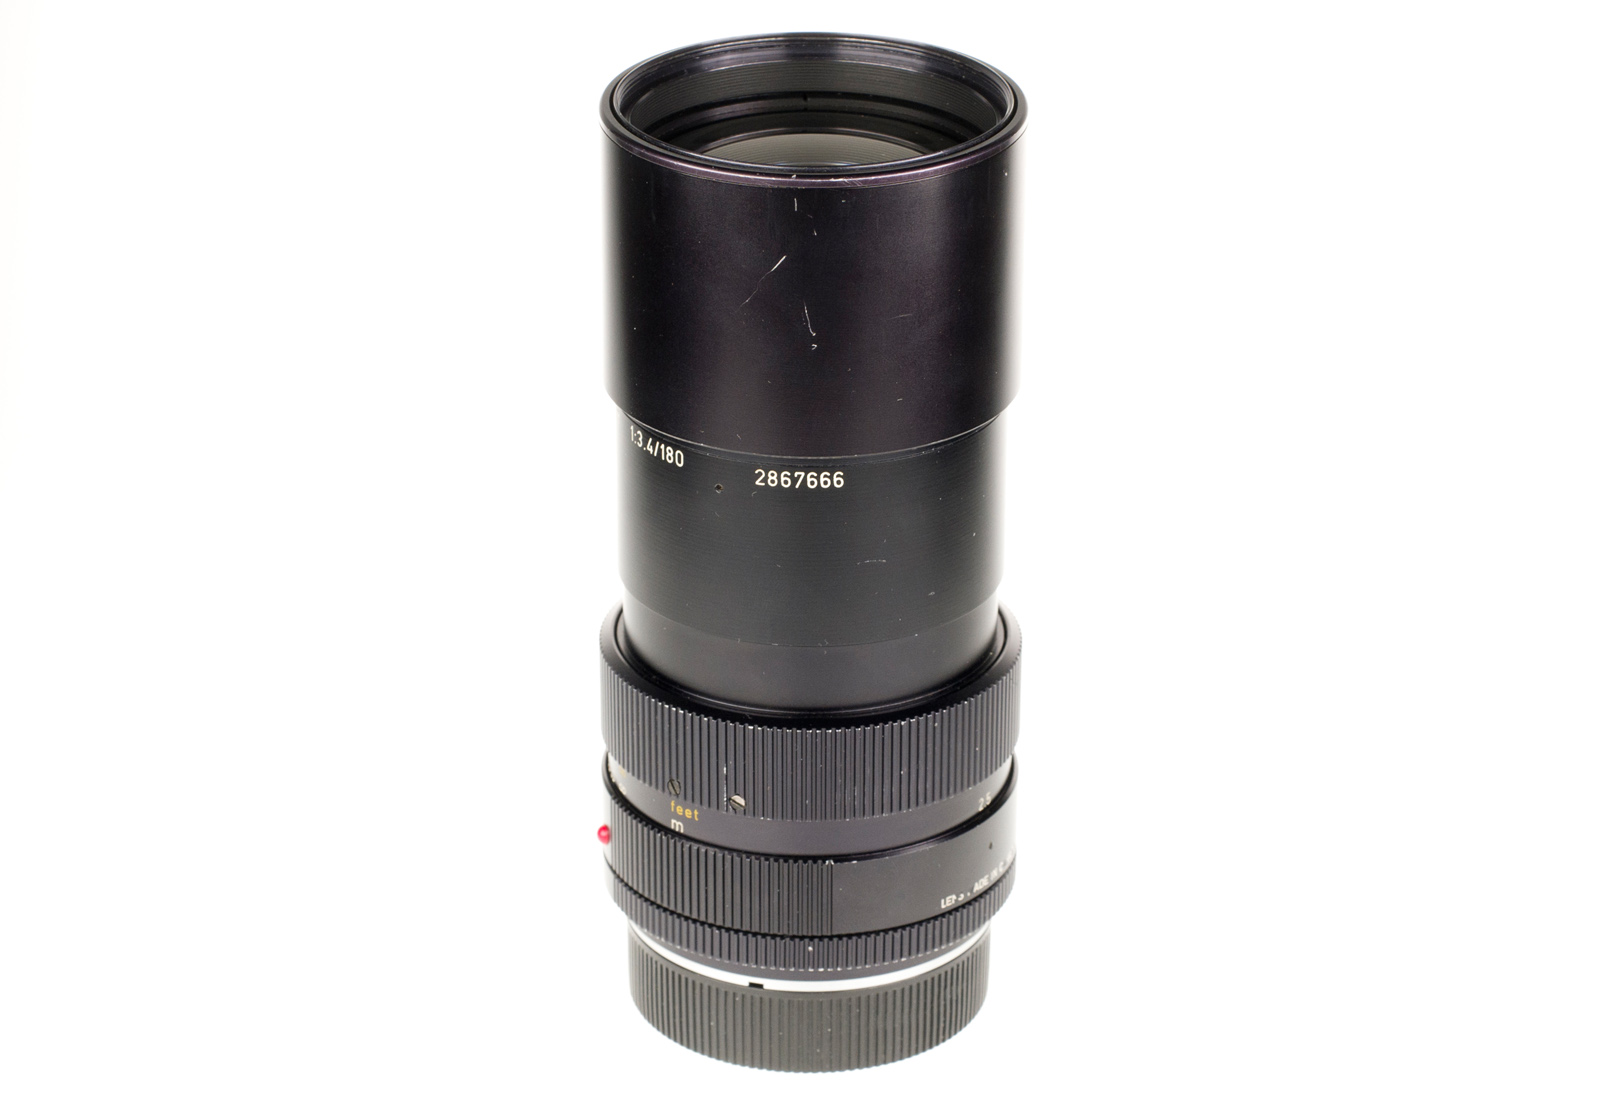 Leica APO-Telyt-R 1:3,4/180mm, schwarz 11240